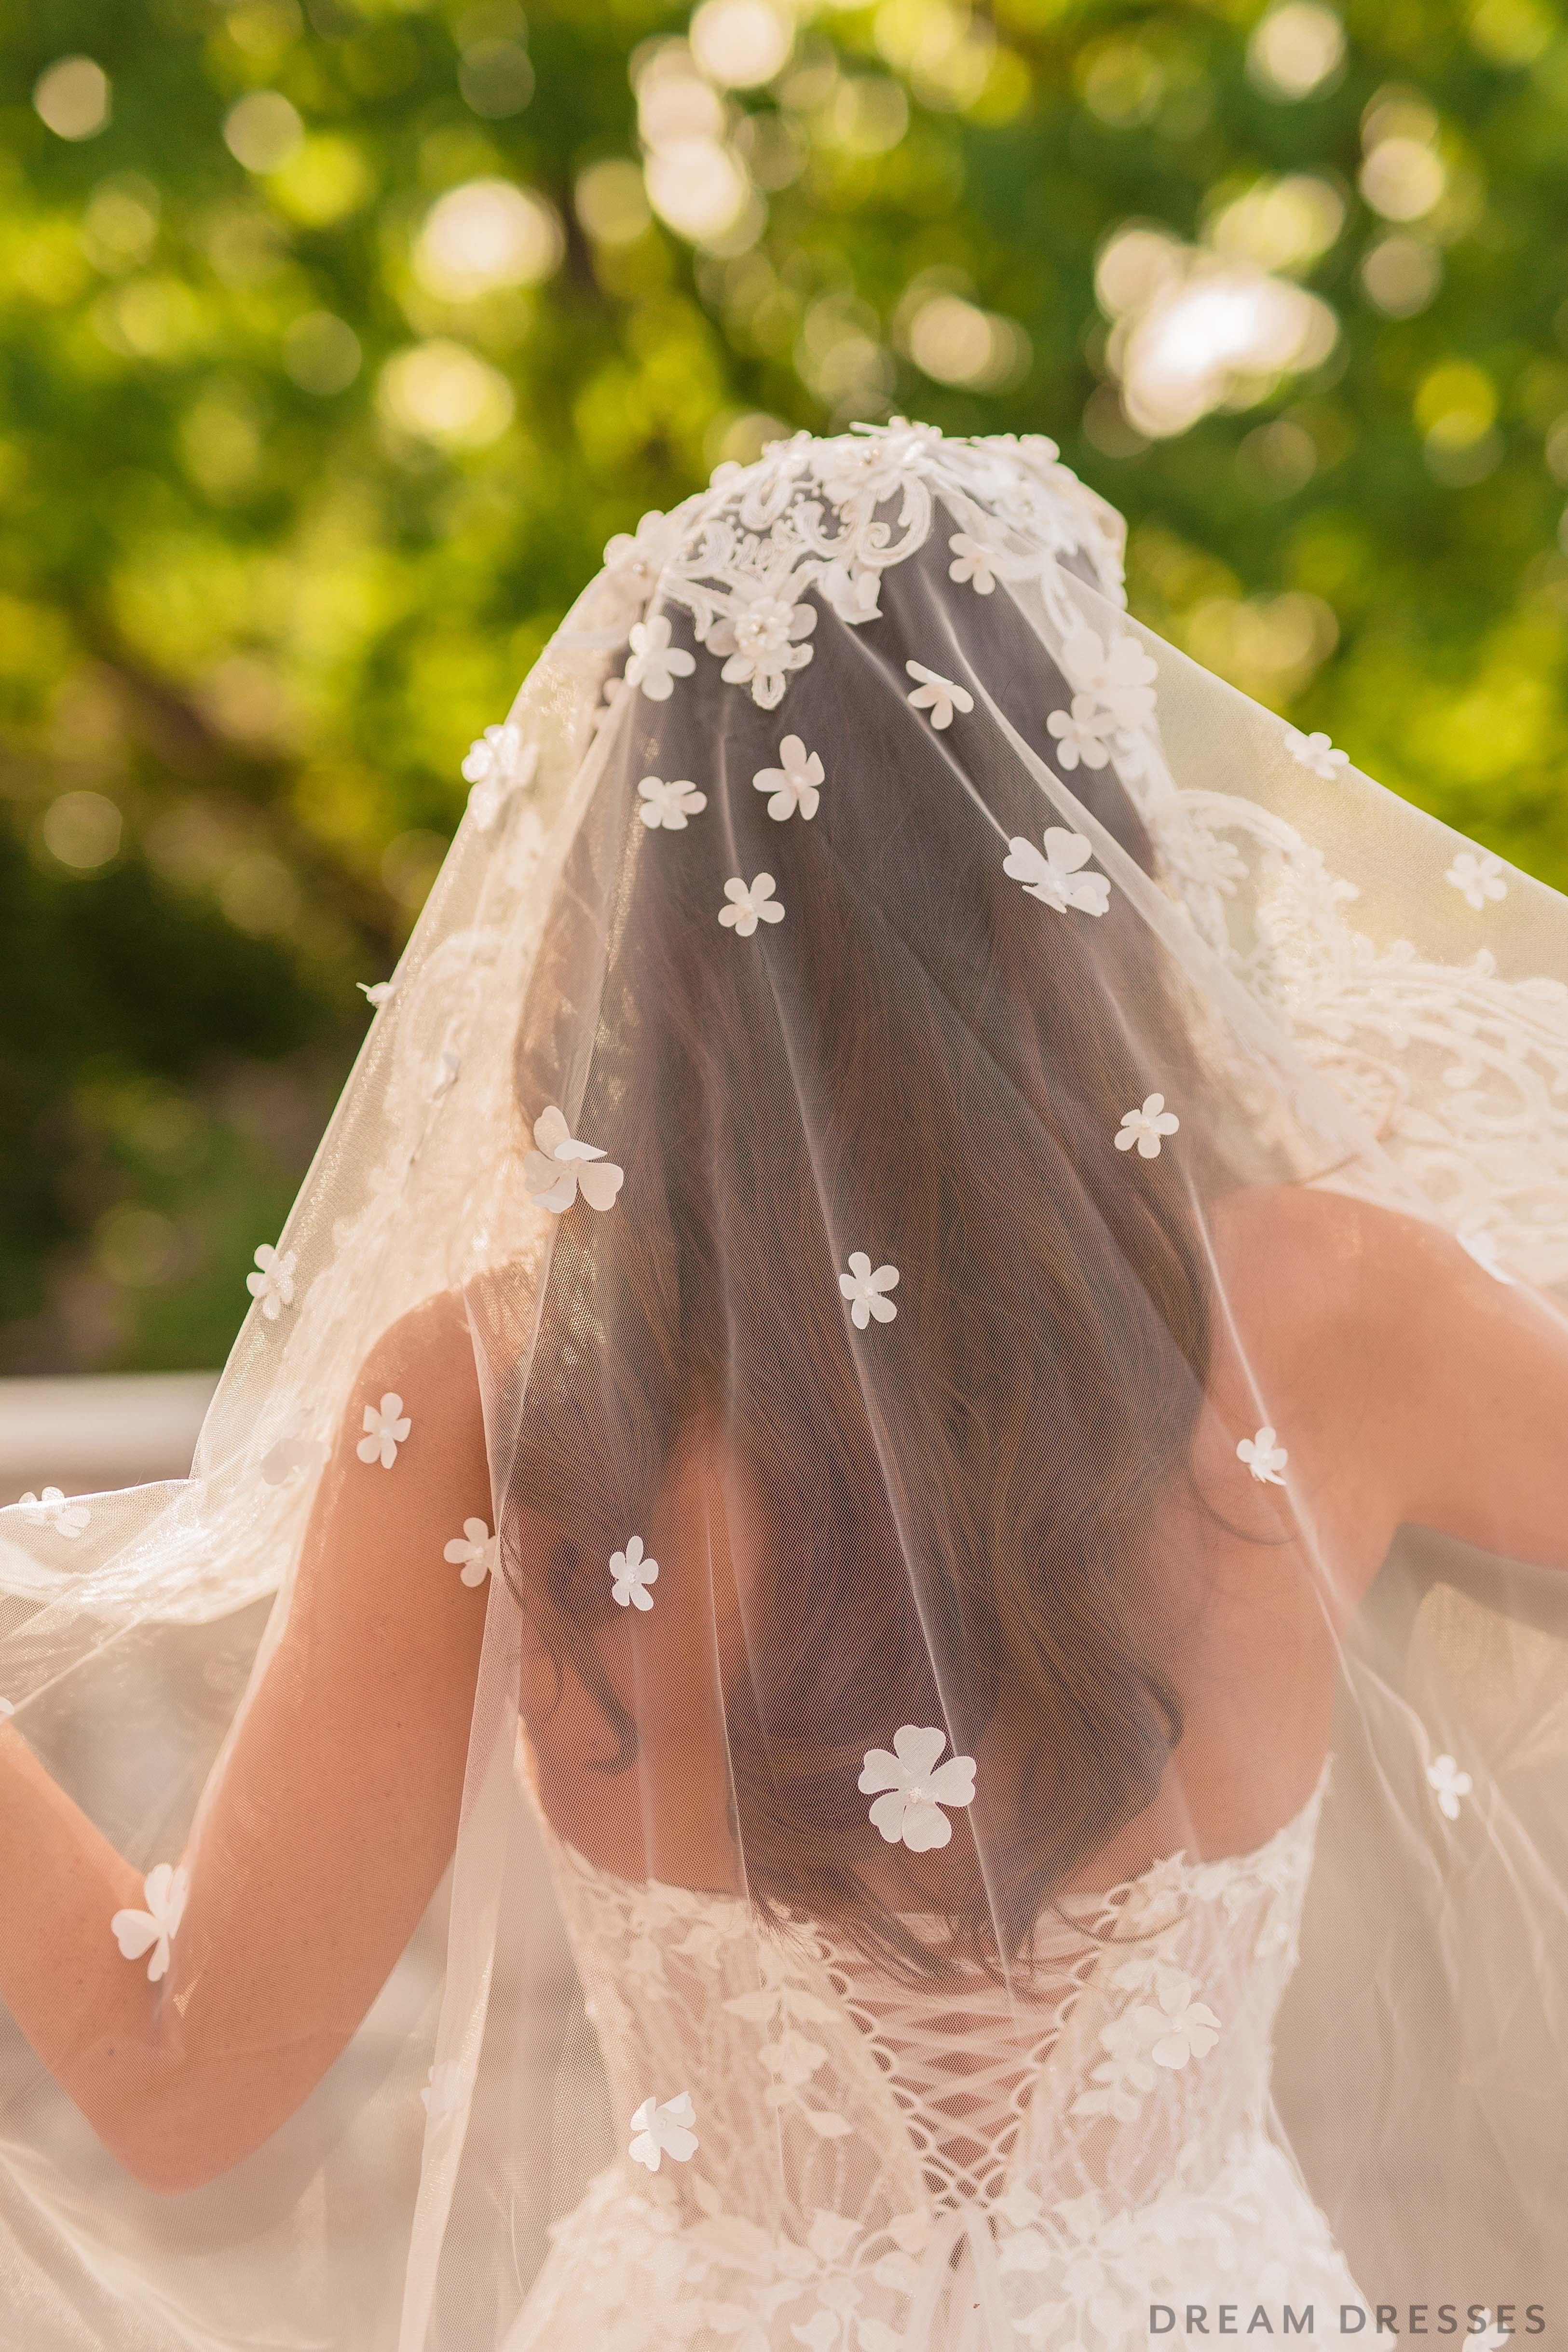 Mantilla Lace Veils - Gorgeous Complements Wedding Veils